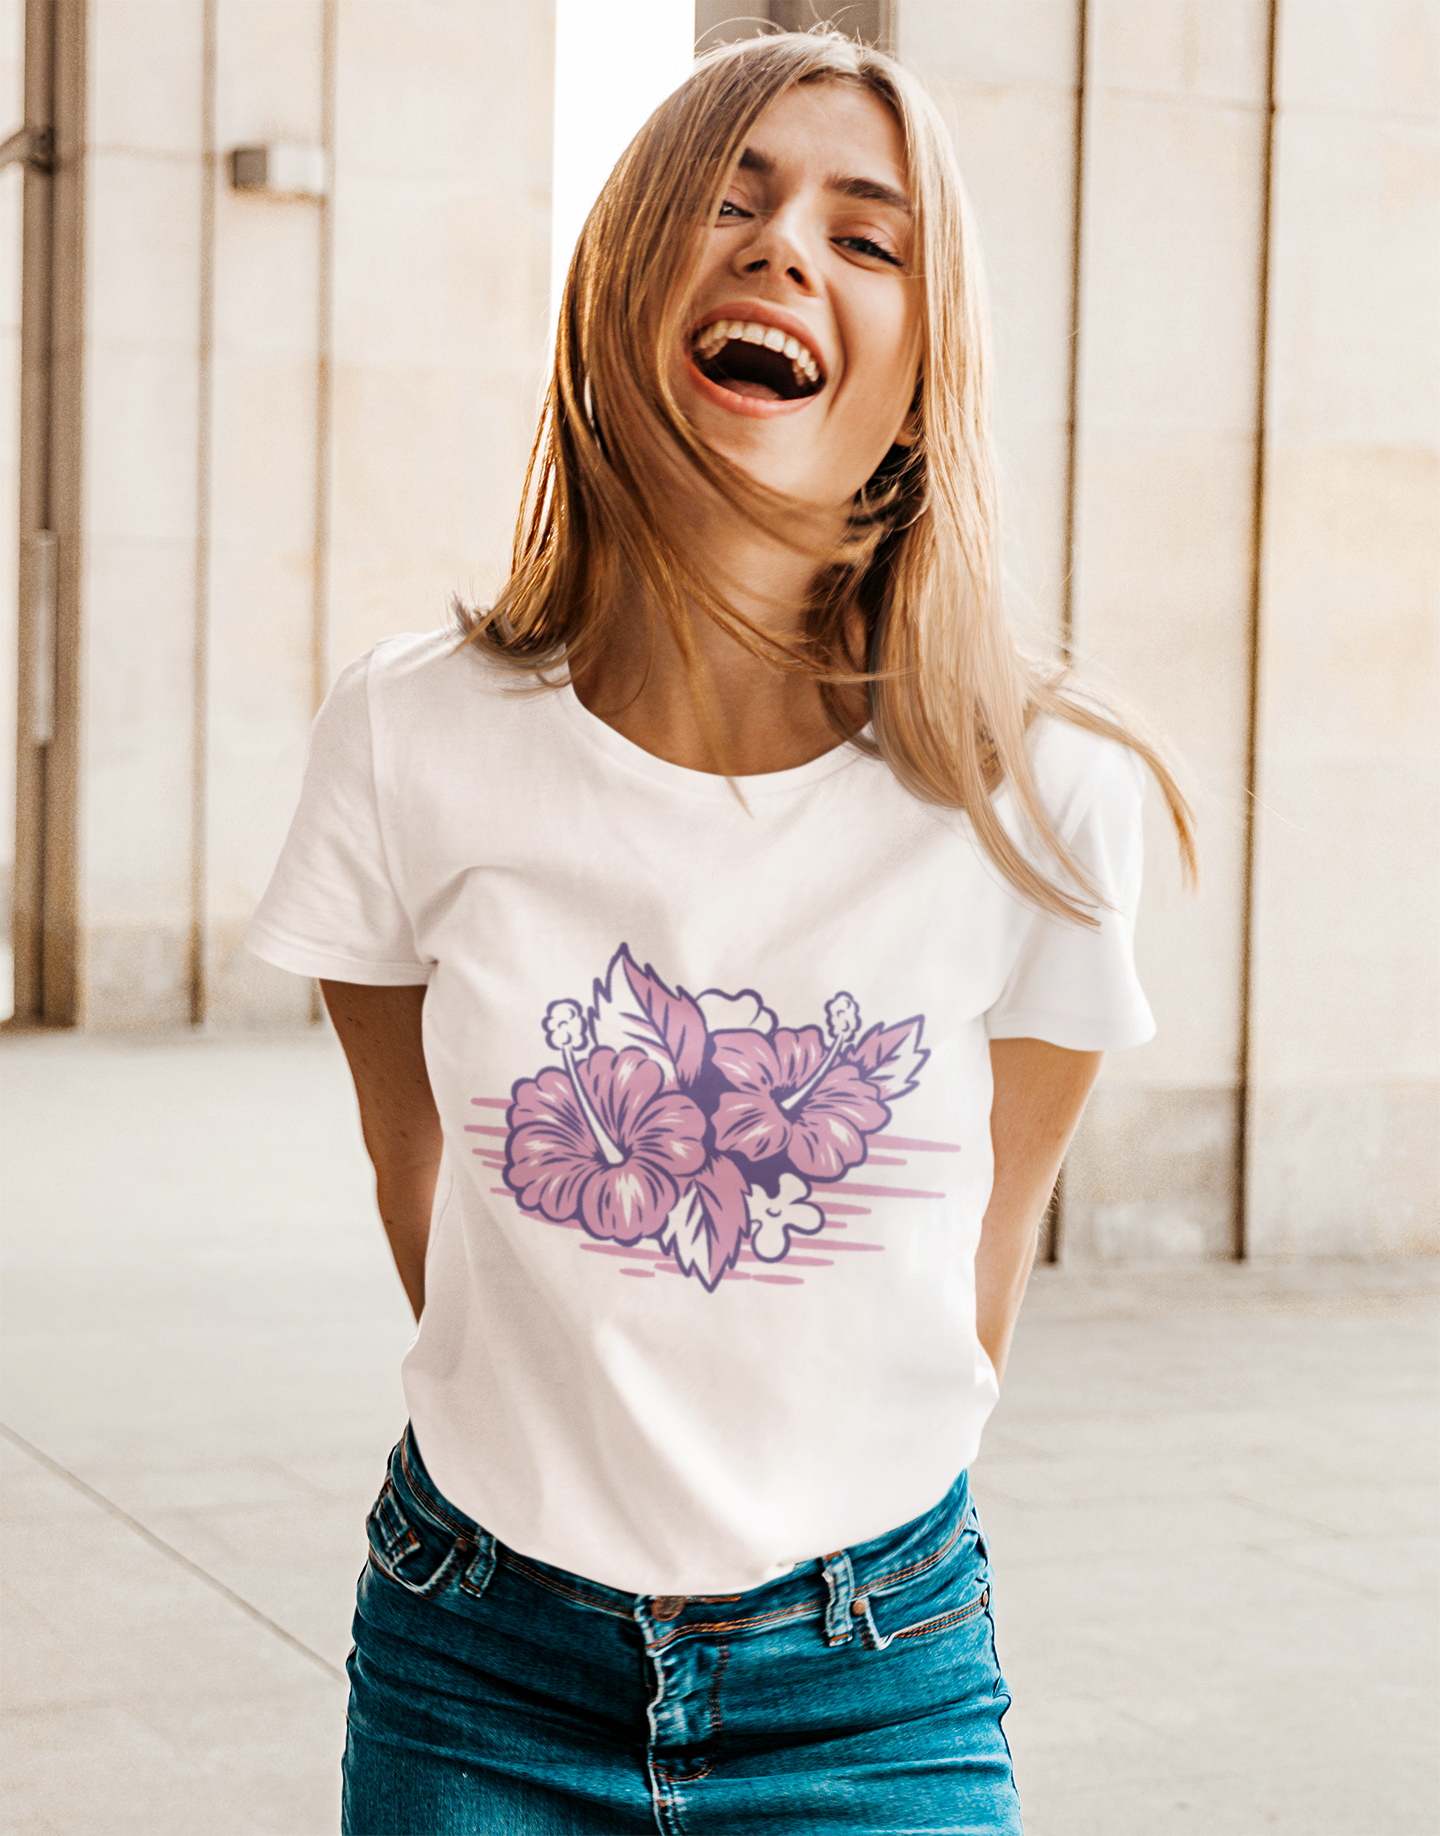 "Hibiscus Flower" Women's short sleeve t-shirt